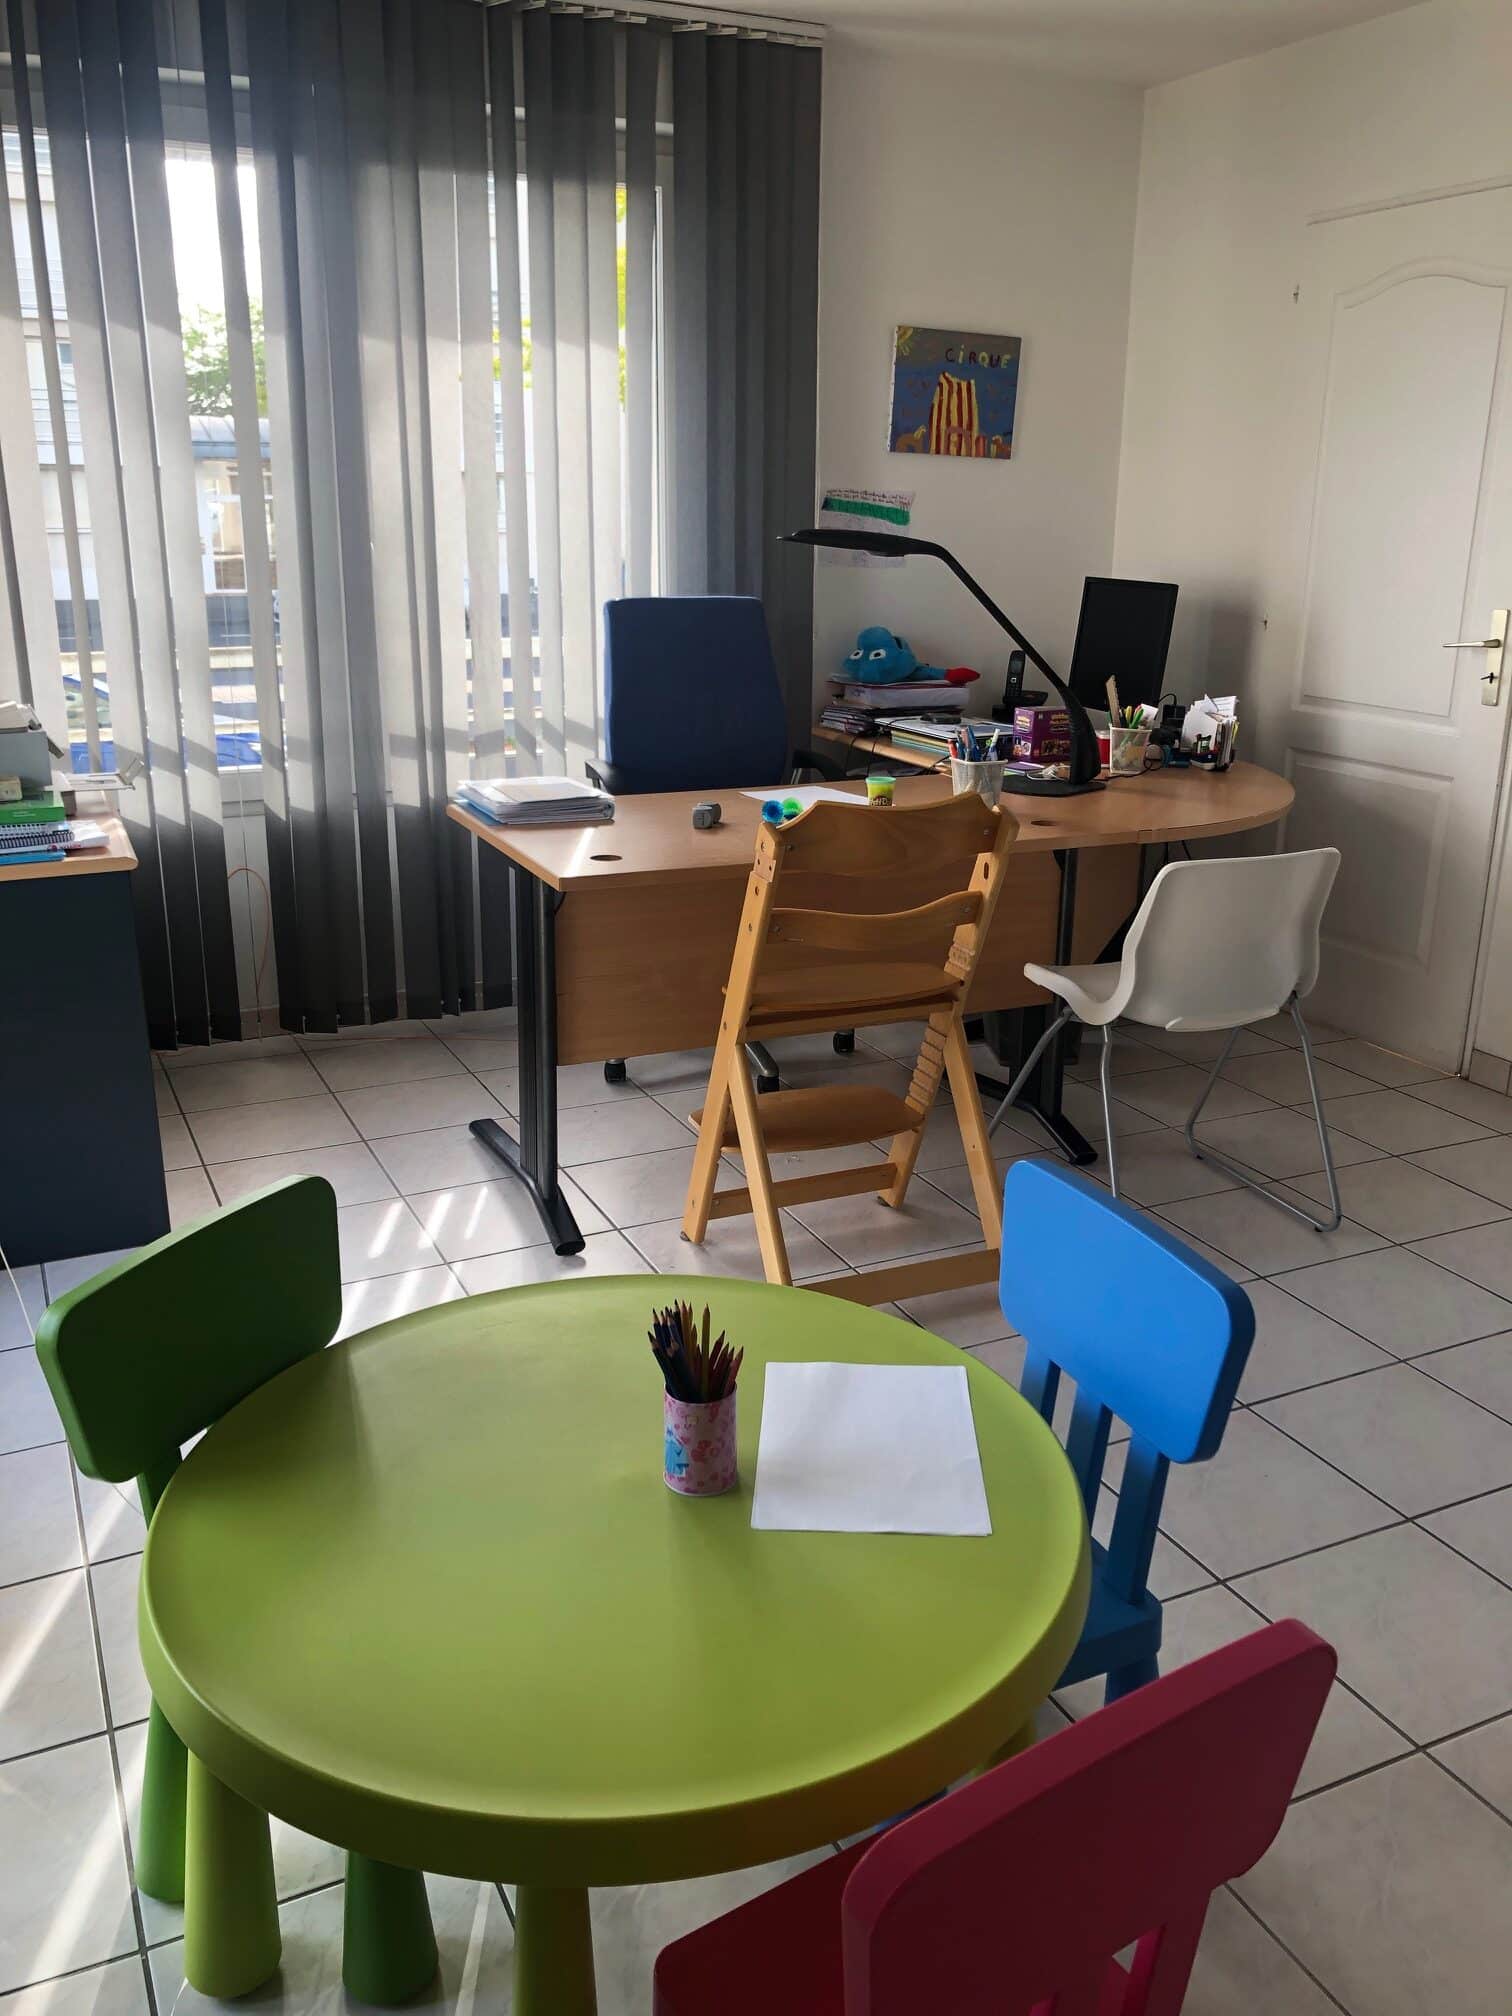 Photo du cabinet de Sophie Rossignol graphopédagogue à Caen. Un grand bureau avec un fauteuil pour la graphopédagogue. L'élève s'installe en face sur une chaise type Trip Trap selon sa taille. Une autre chaise est à disposition à côté pour l'éventuel parent qui accompagne.